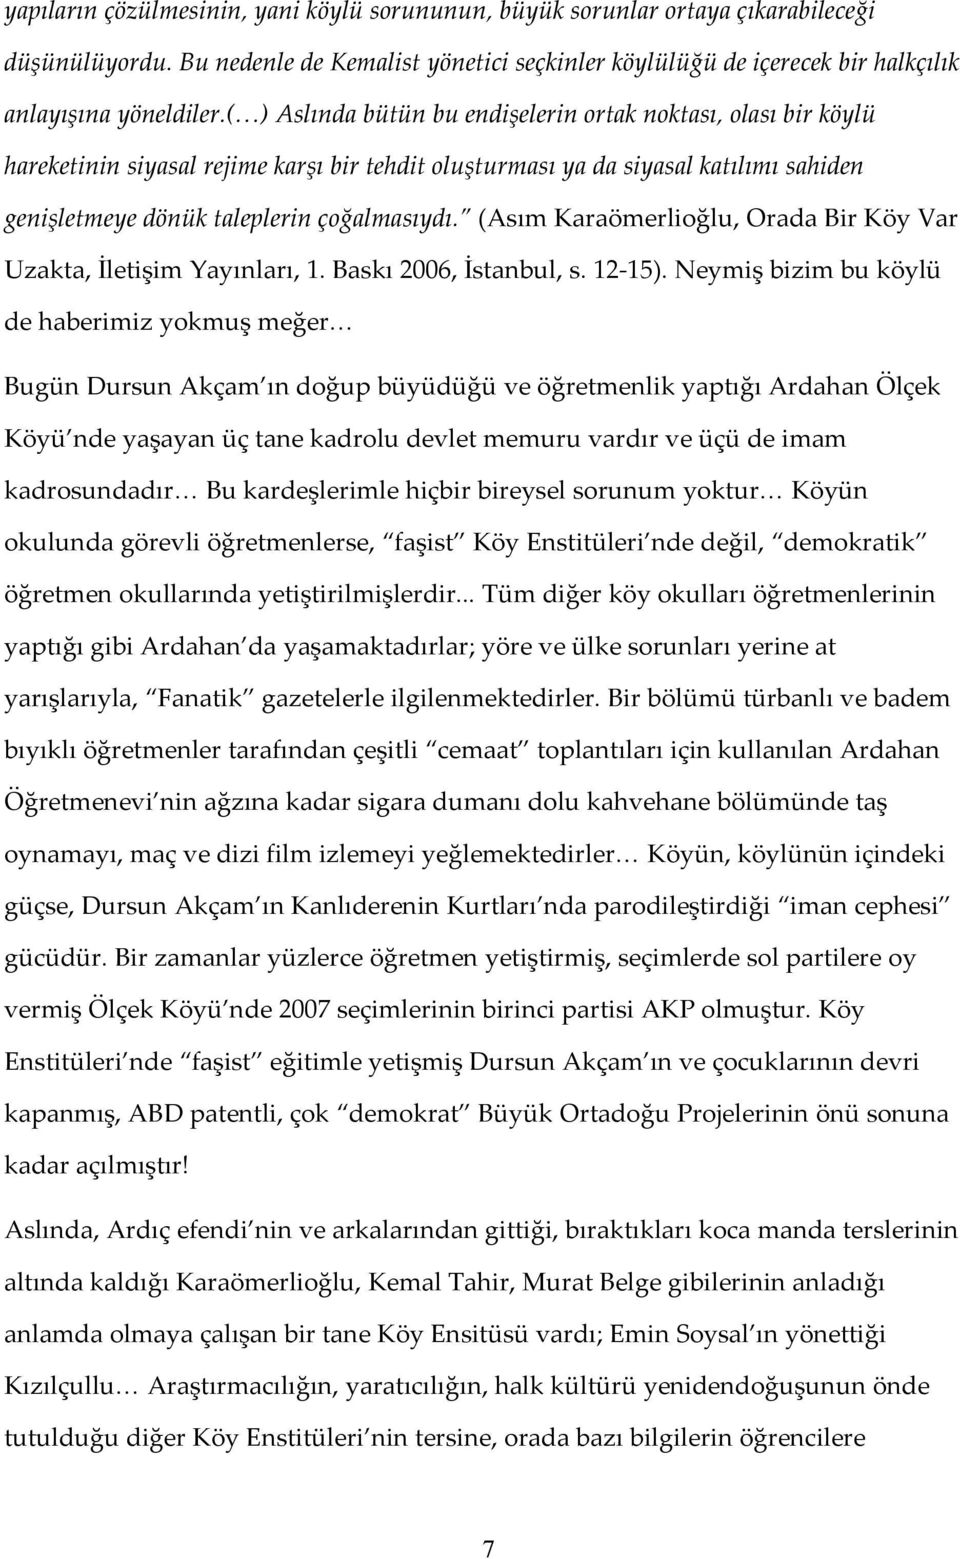 (Asım Karaömerlioğlu, Orada Bir Köy Var Uzakta, İletişim Yayınları, 1. Baskı 2006, İstanbul, s. 12-15).